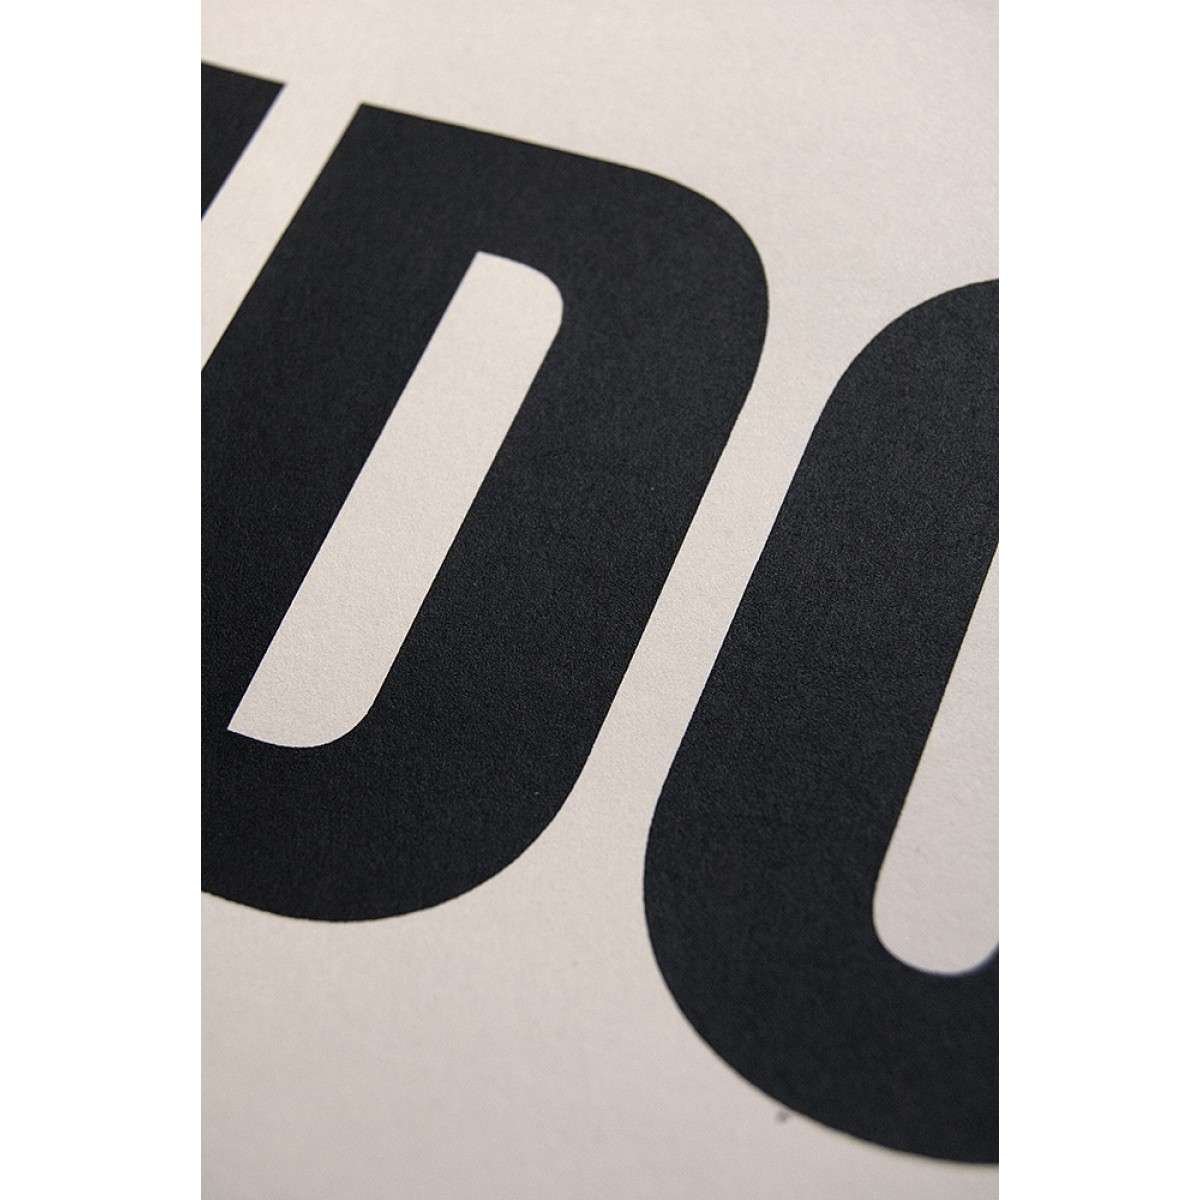 Buchstabenort London Stadtteile-Poster Typografie